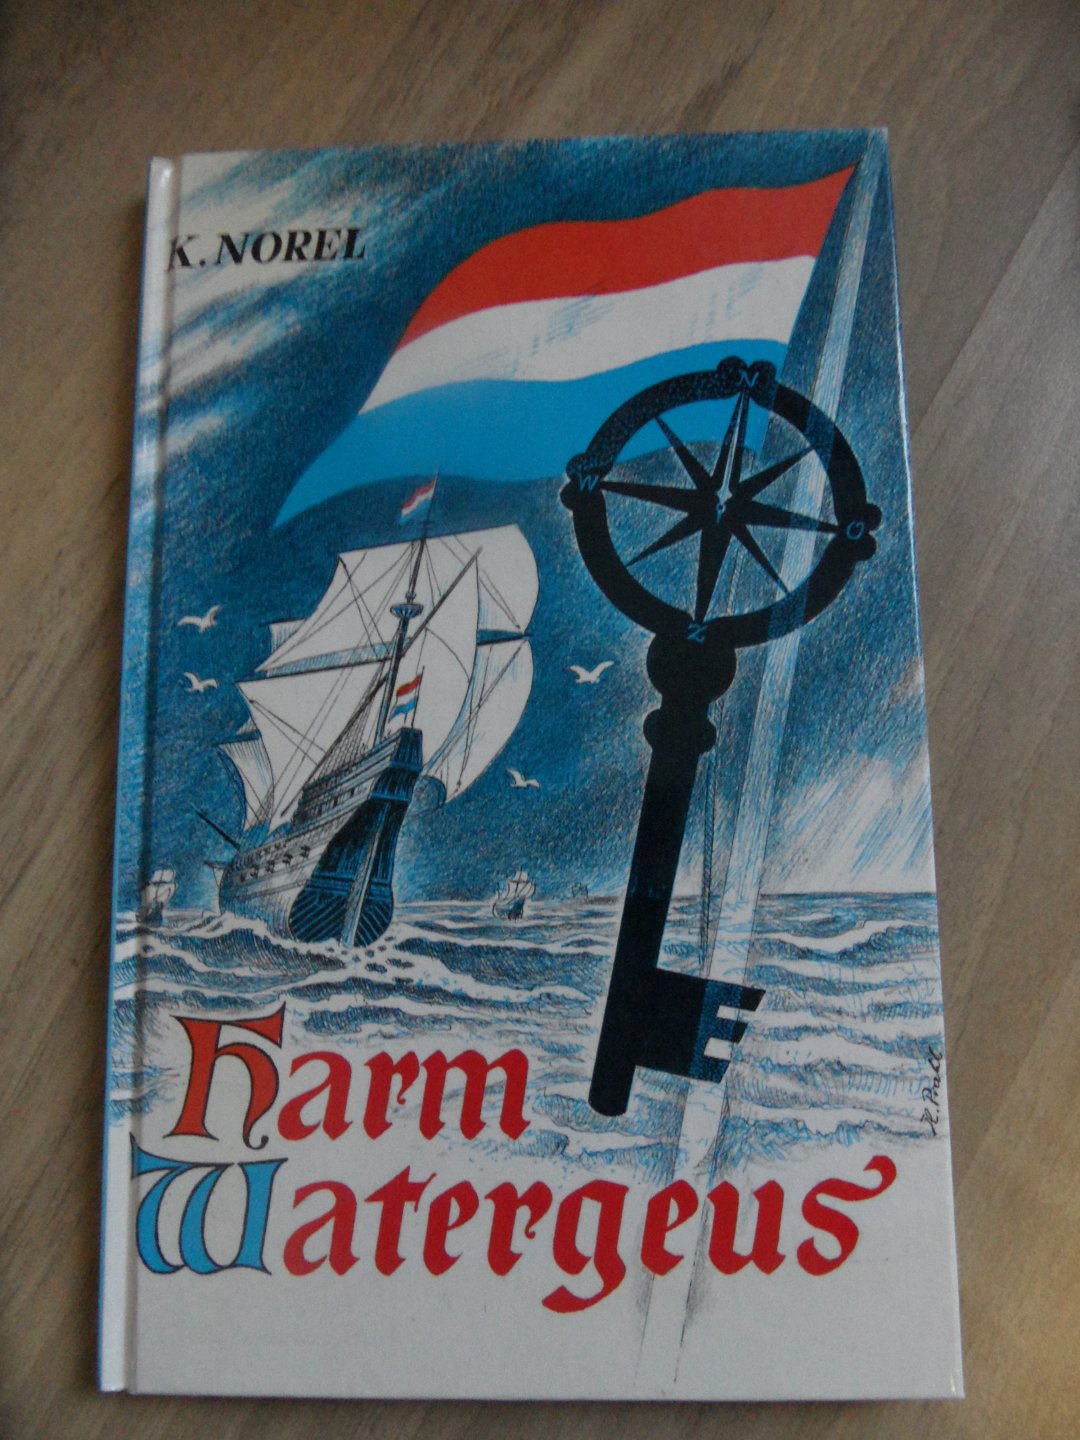 Norel, K. - harm Watergeus